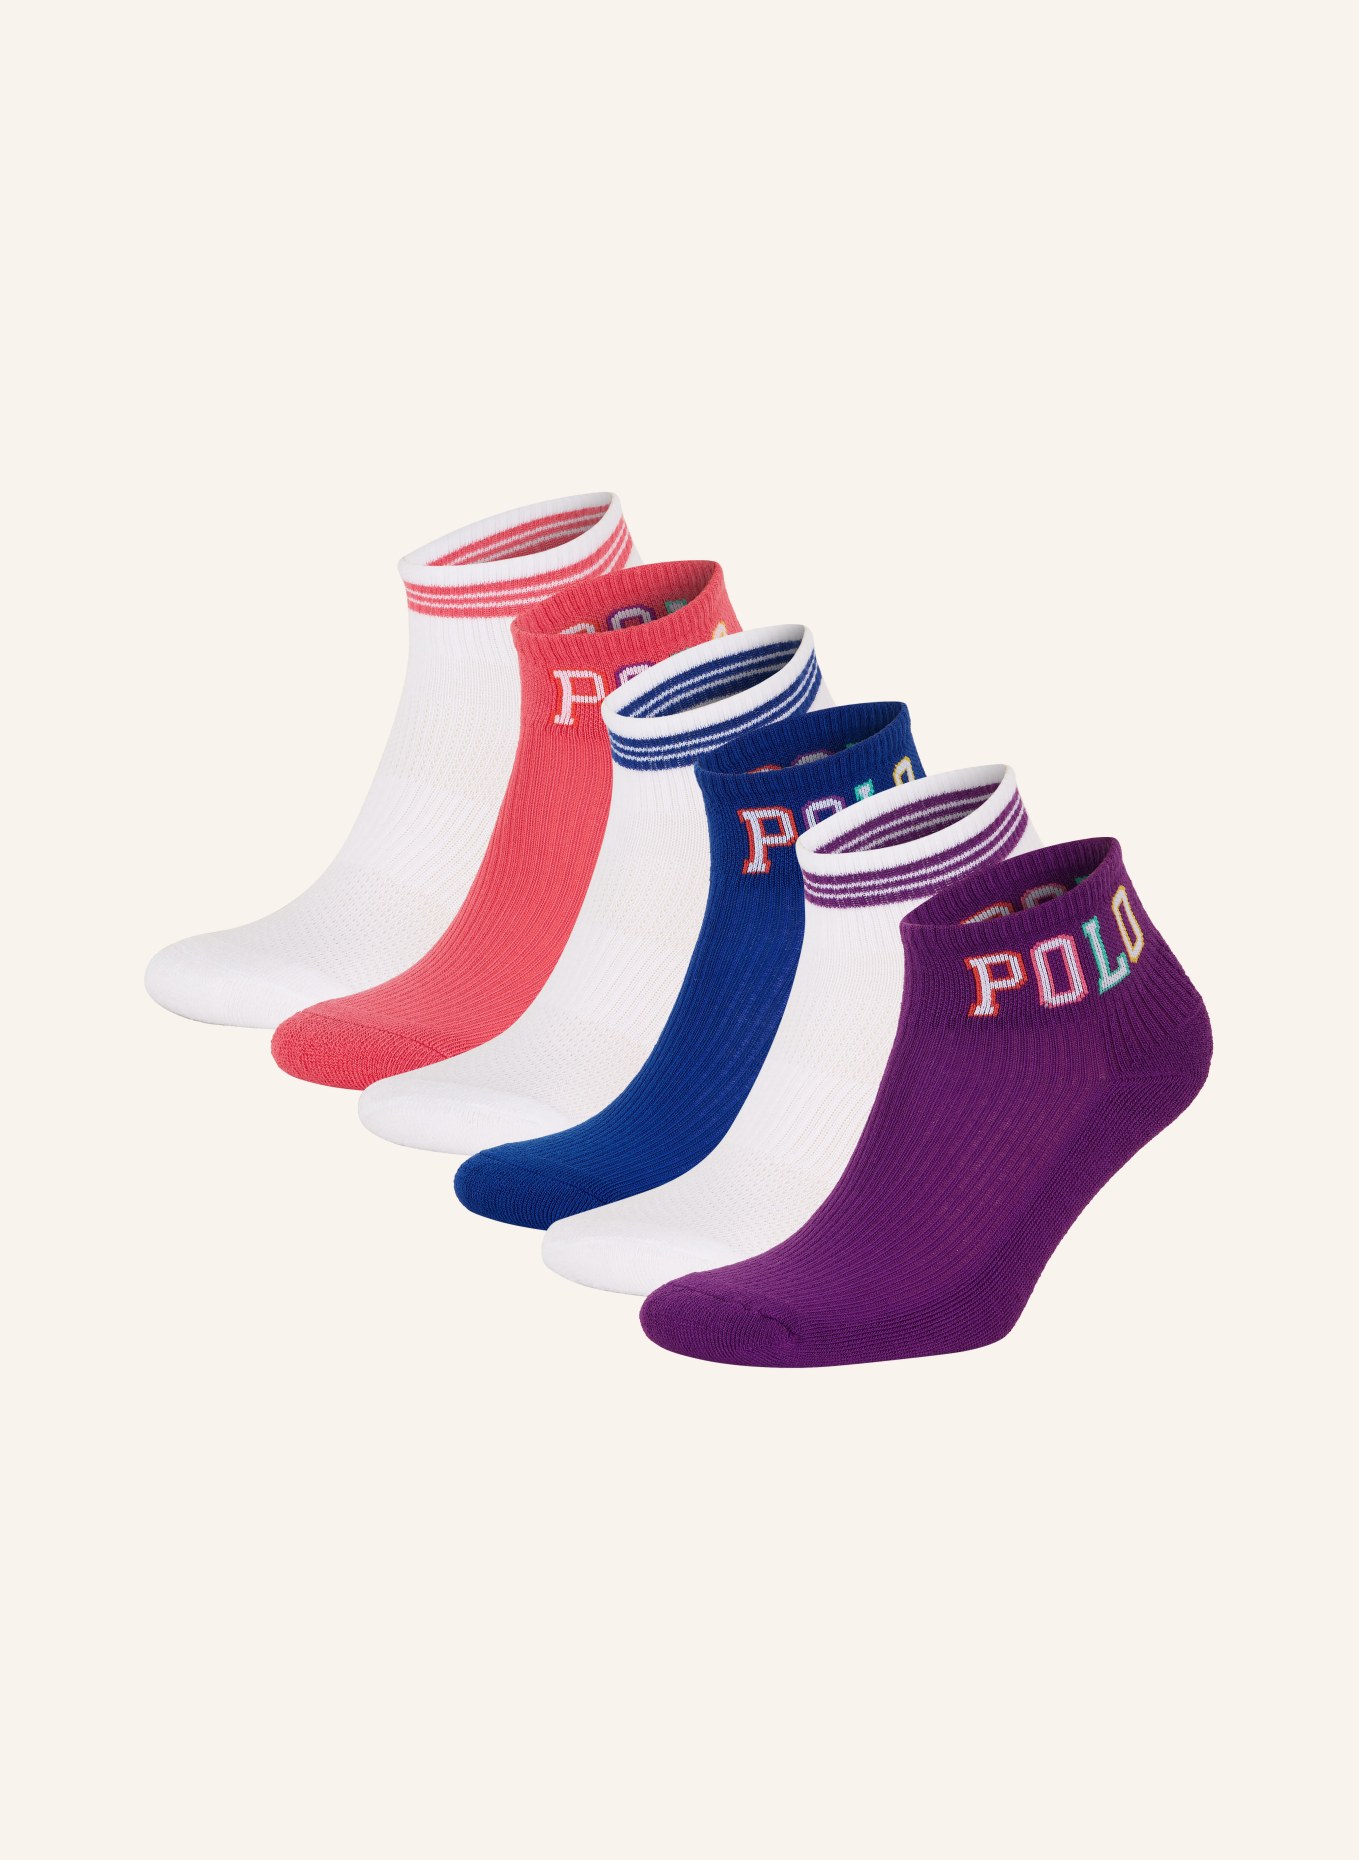 POLO RALPH LAUREN 6er-Pack Socken, Farbe: 001 assorted (Bild 1)